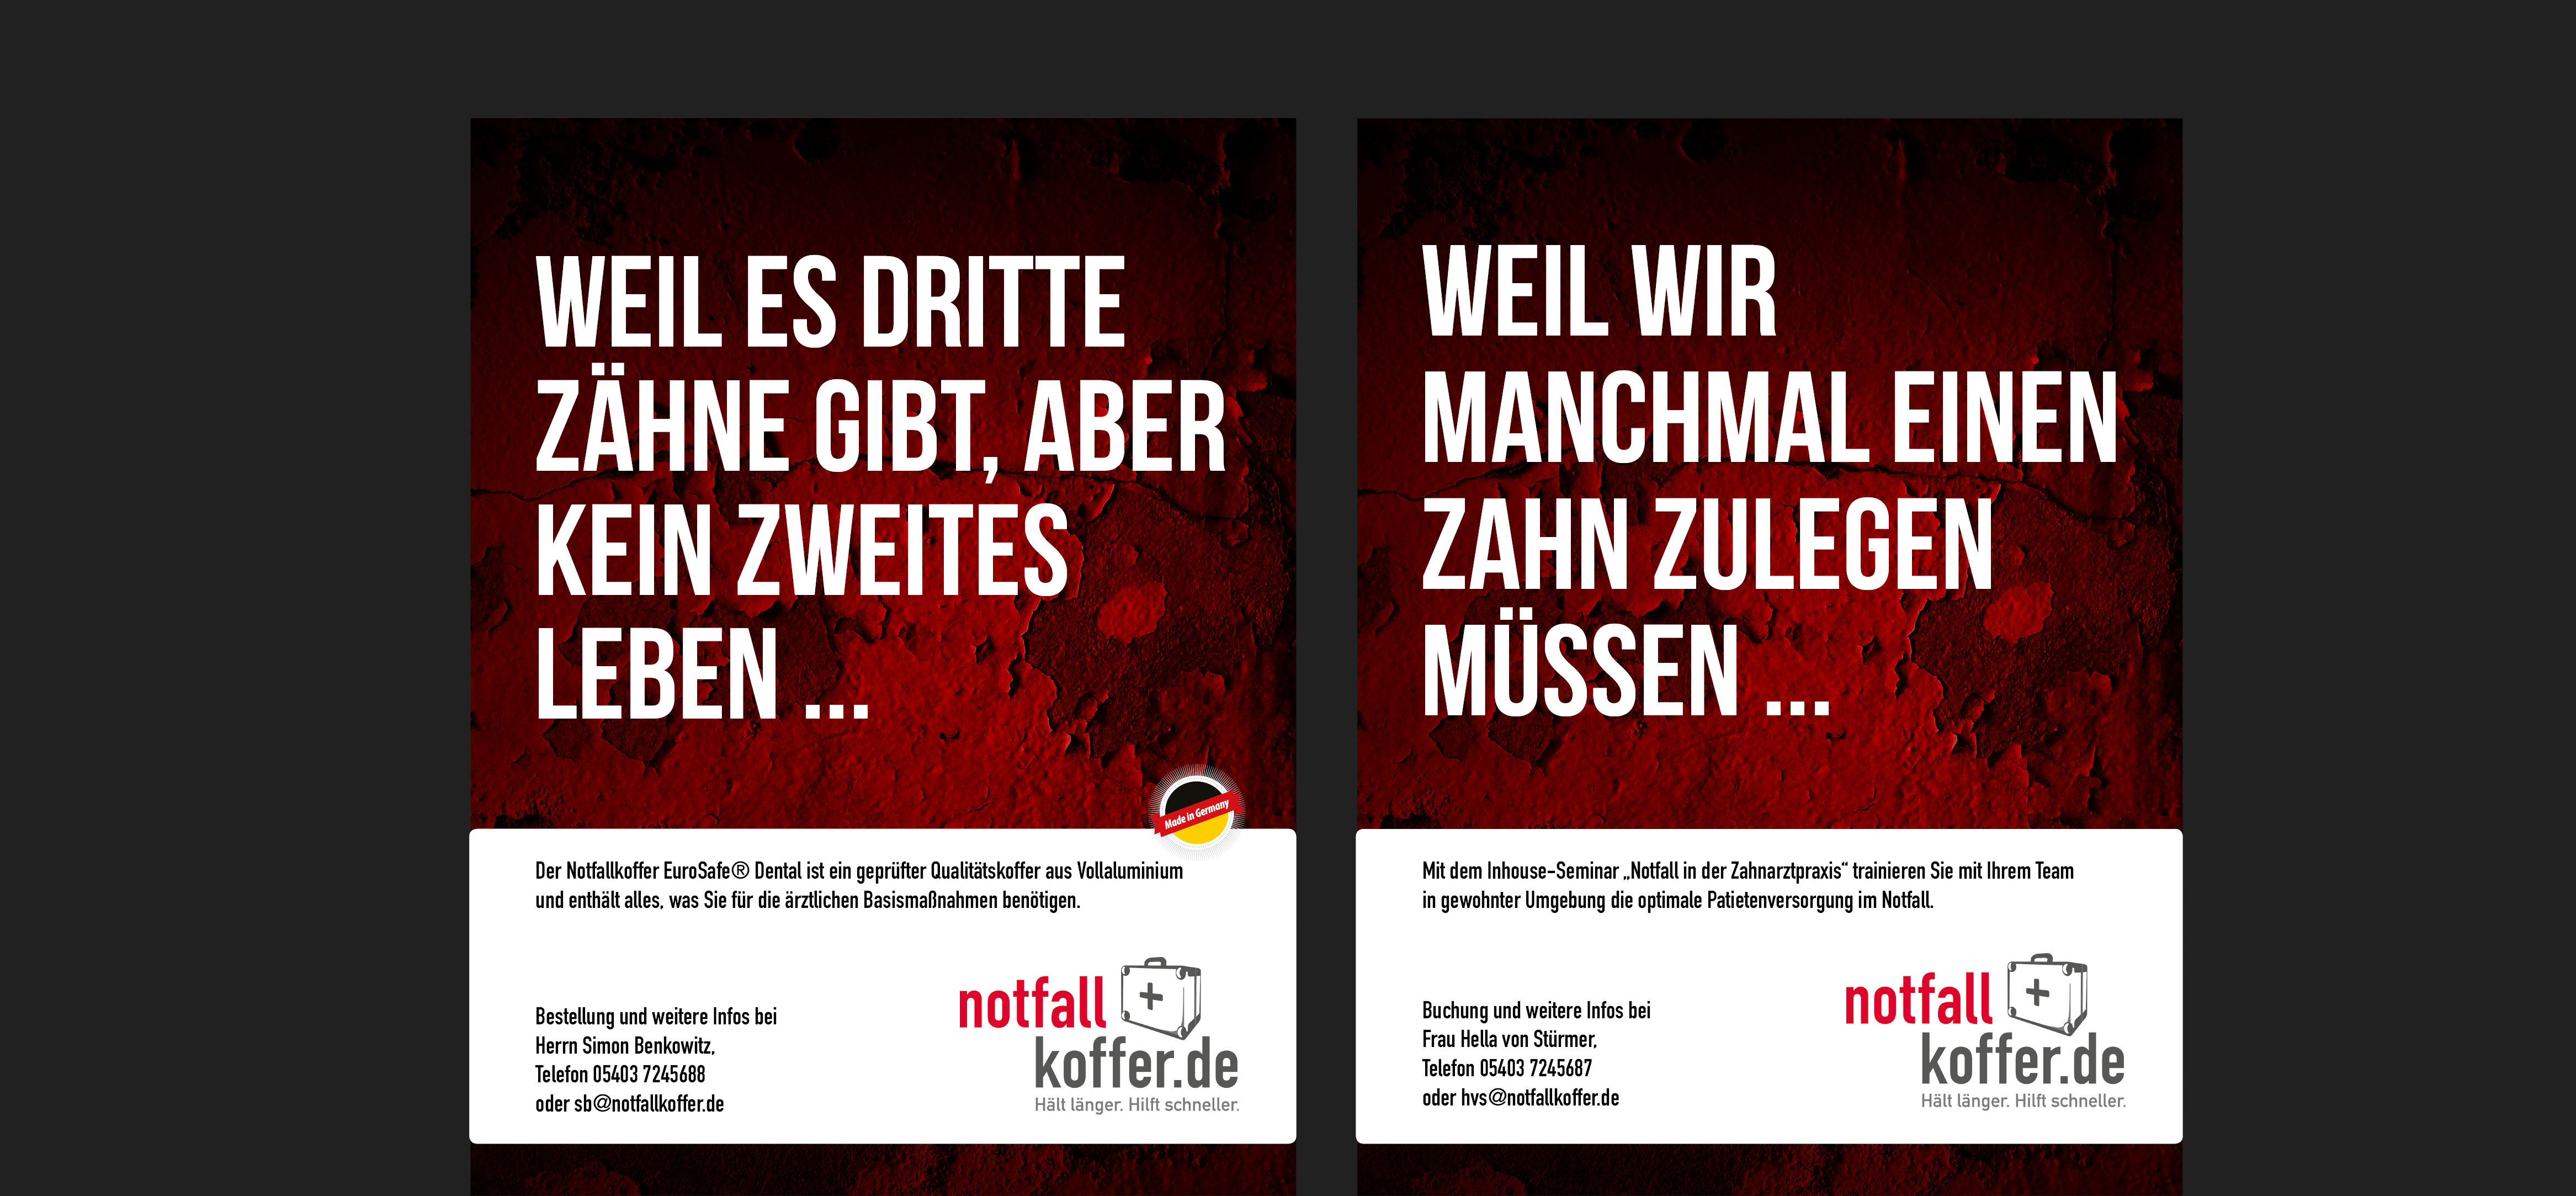 Referenzbild Anzeigenkampagne notfallkoffer.de